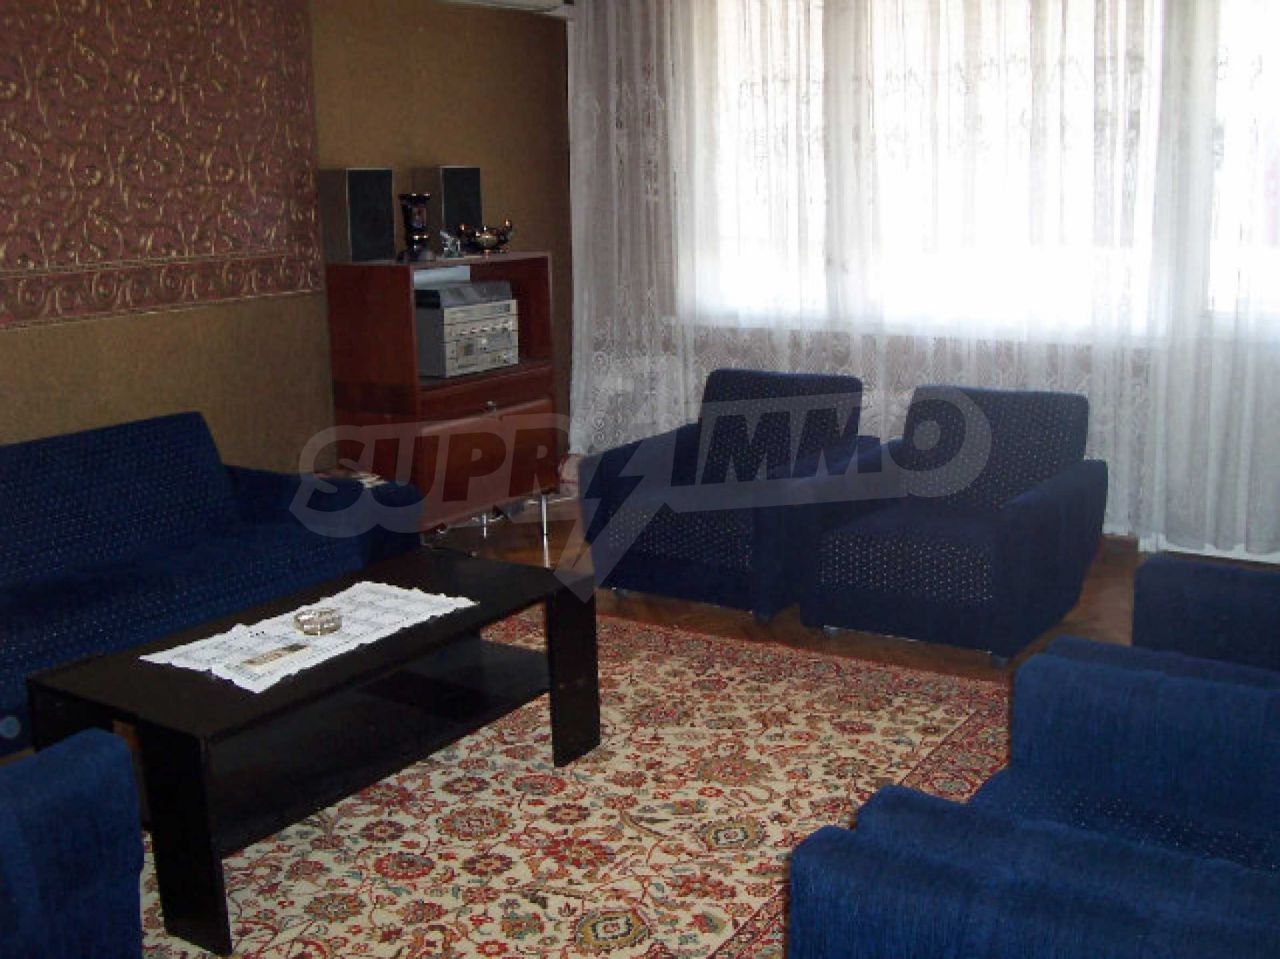 Apartment in Vidin, Bulgaria, 140 sq.m - picture 1